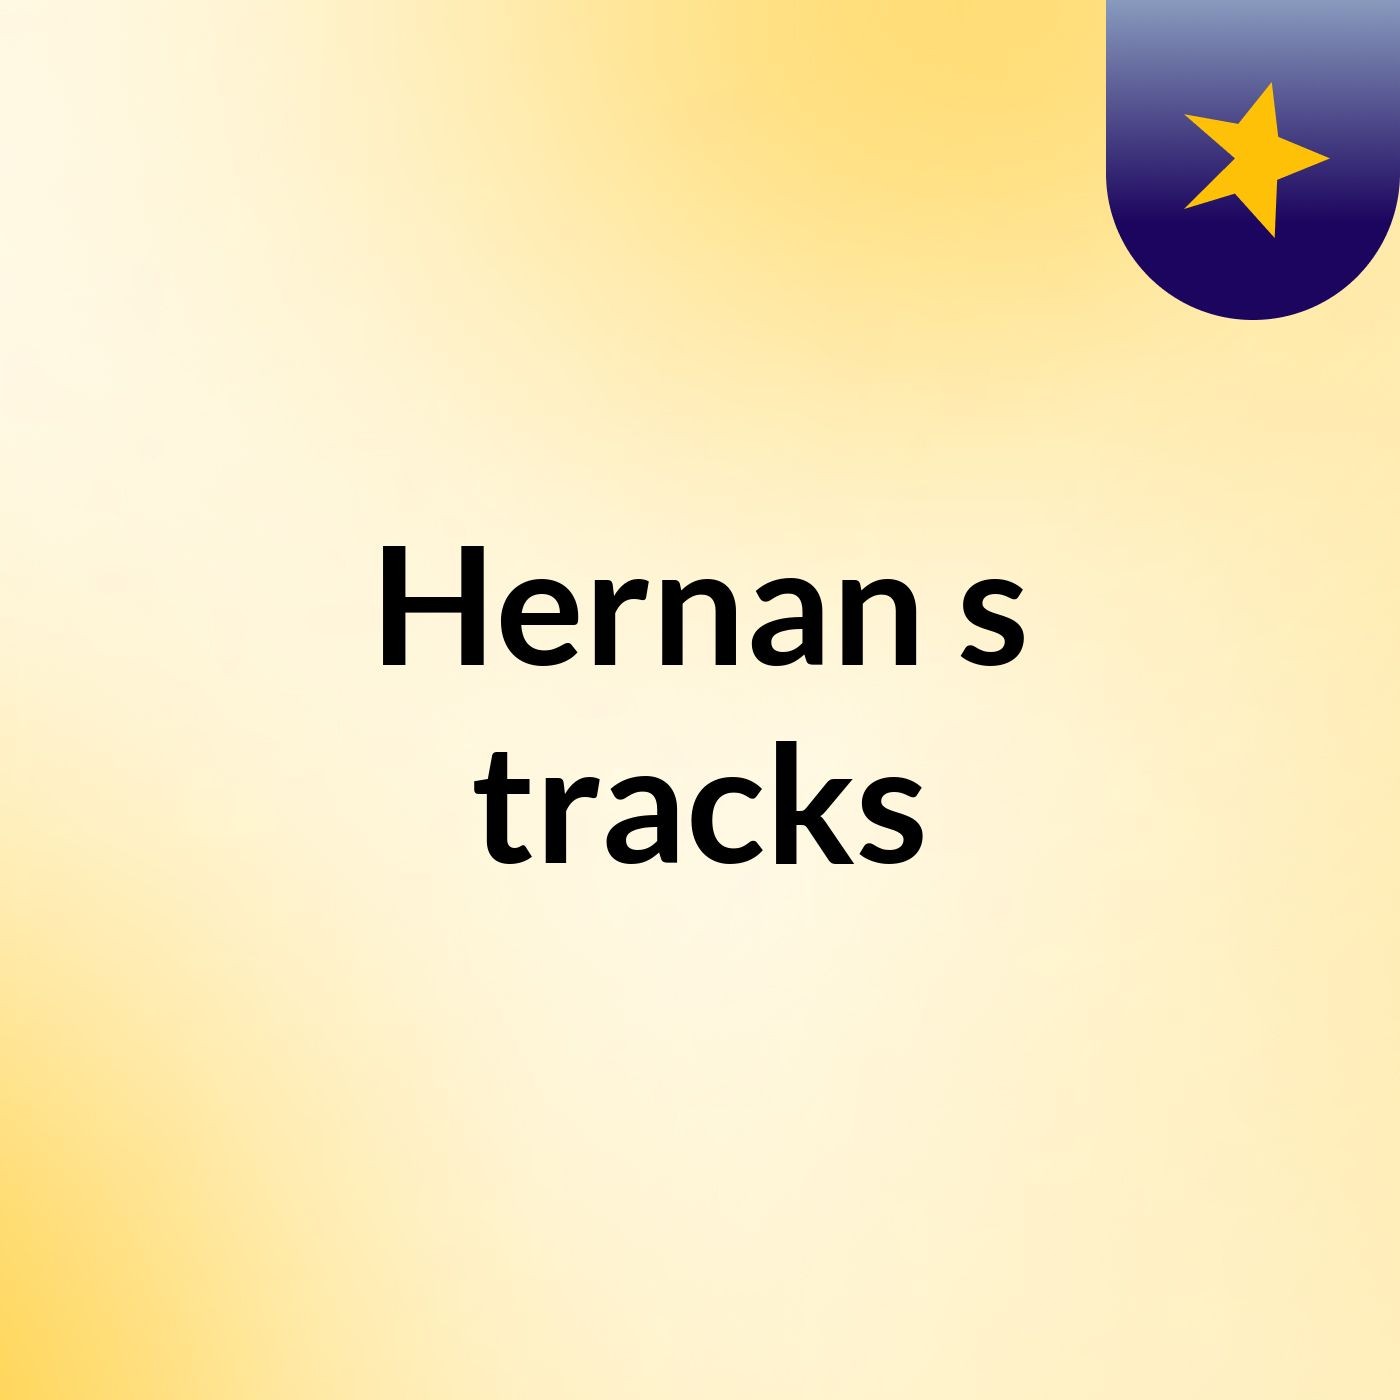 Hernan's tracks